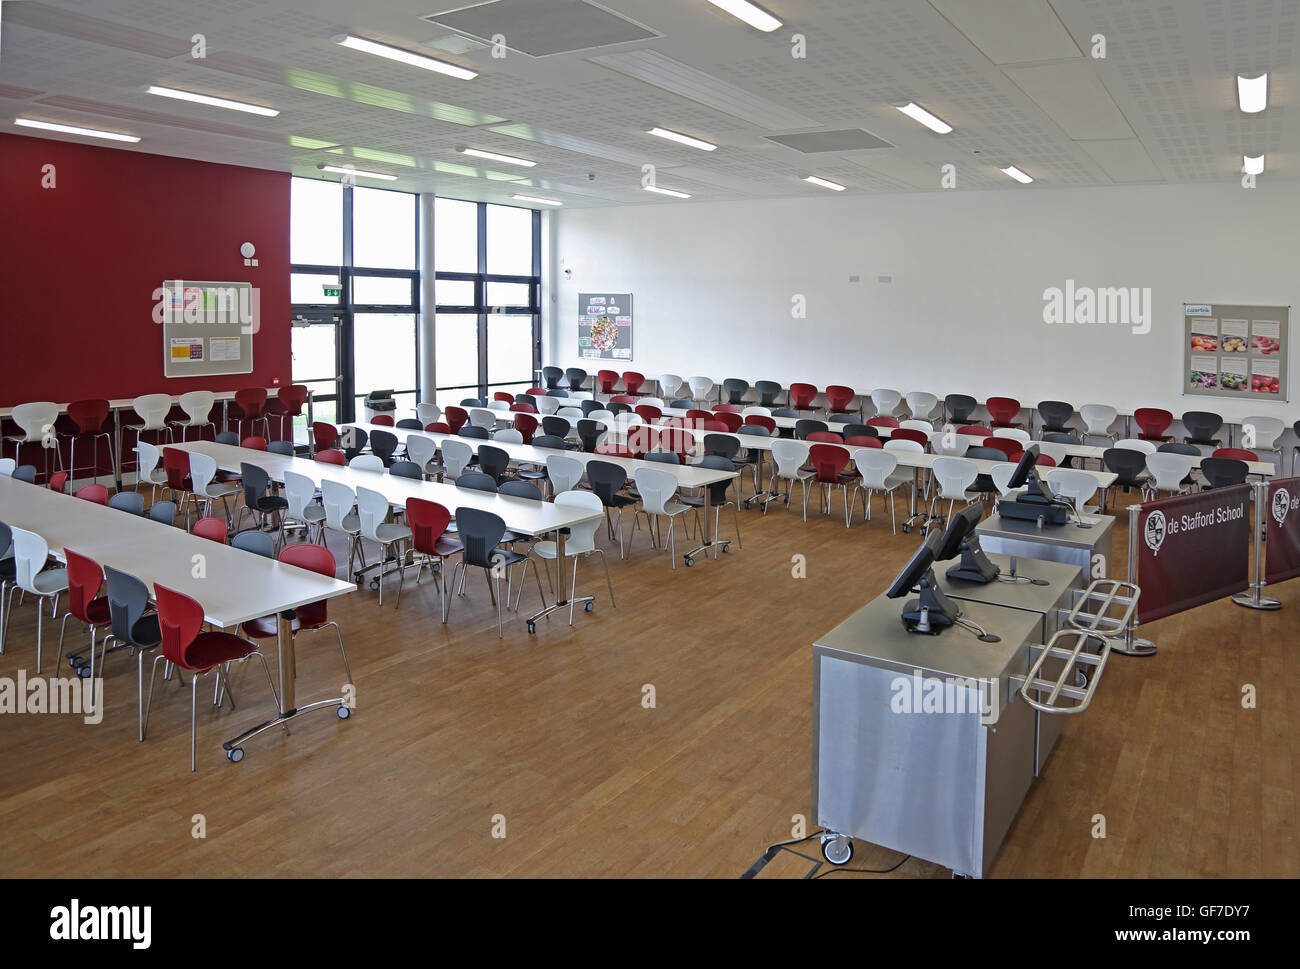 Innenansicht einer neuen Schule Speisesaal. Tische und Stühle für Gegend, keine Menschen zeigt. Stockfoto